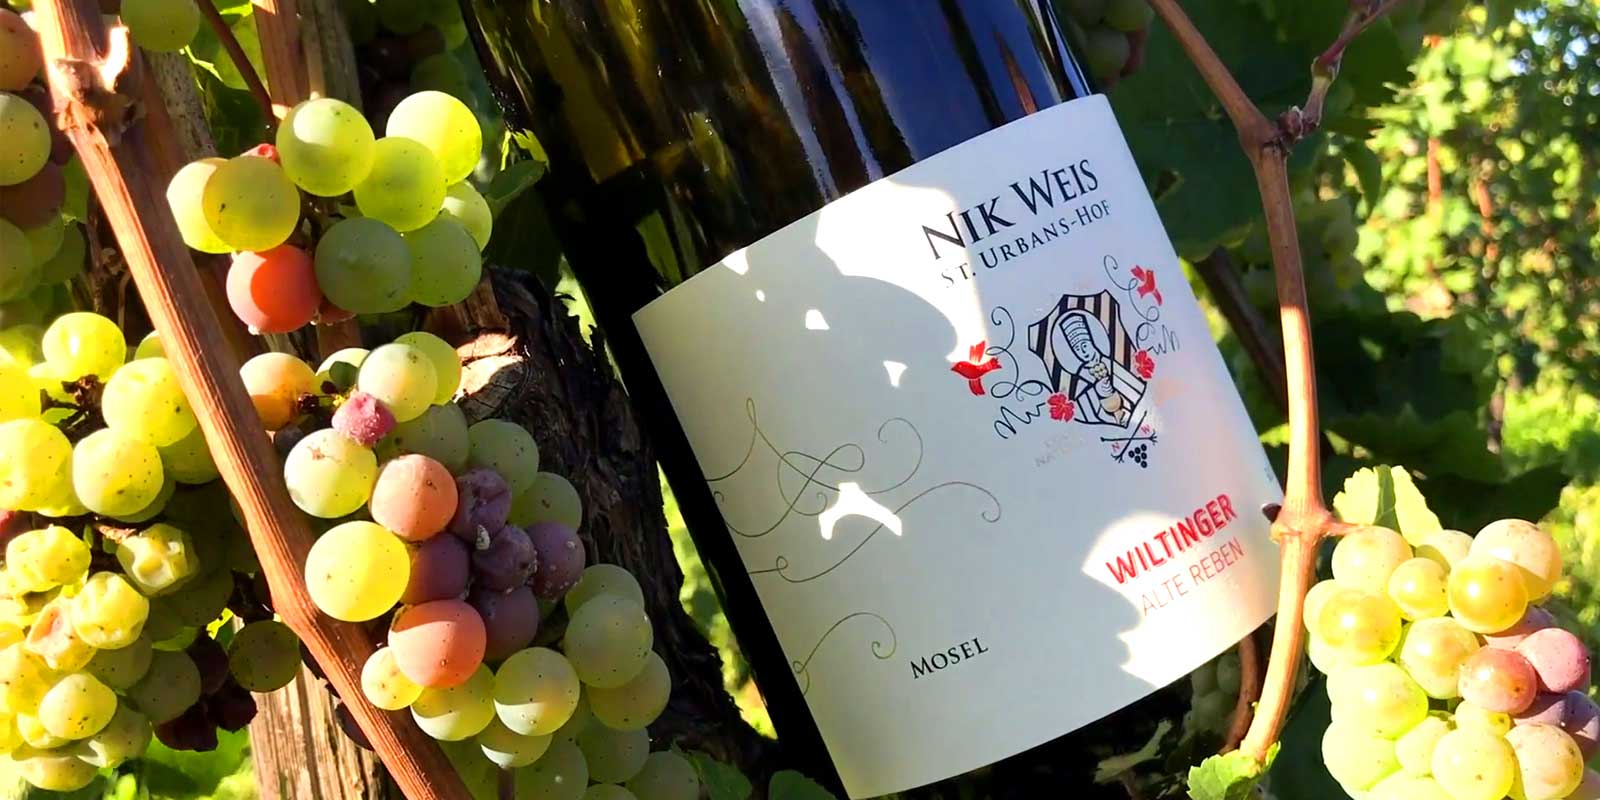 Winiarnia Sankt Urbans-Hof - Moselle Winiarnia St. Urbans-Hof zostala zalozona w 1947 roku przez Nicolausa Weisa. Jego wnuk Nik Weis jest obecnie trzecim pokoleniem prowadzacym winnice.